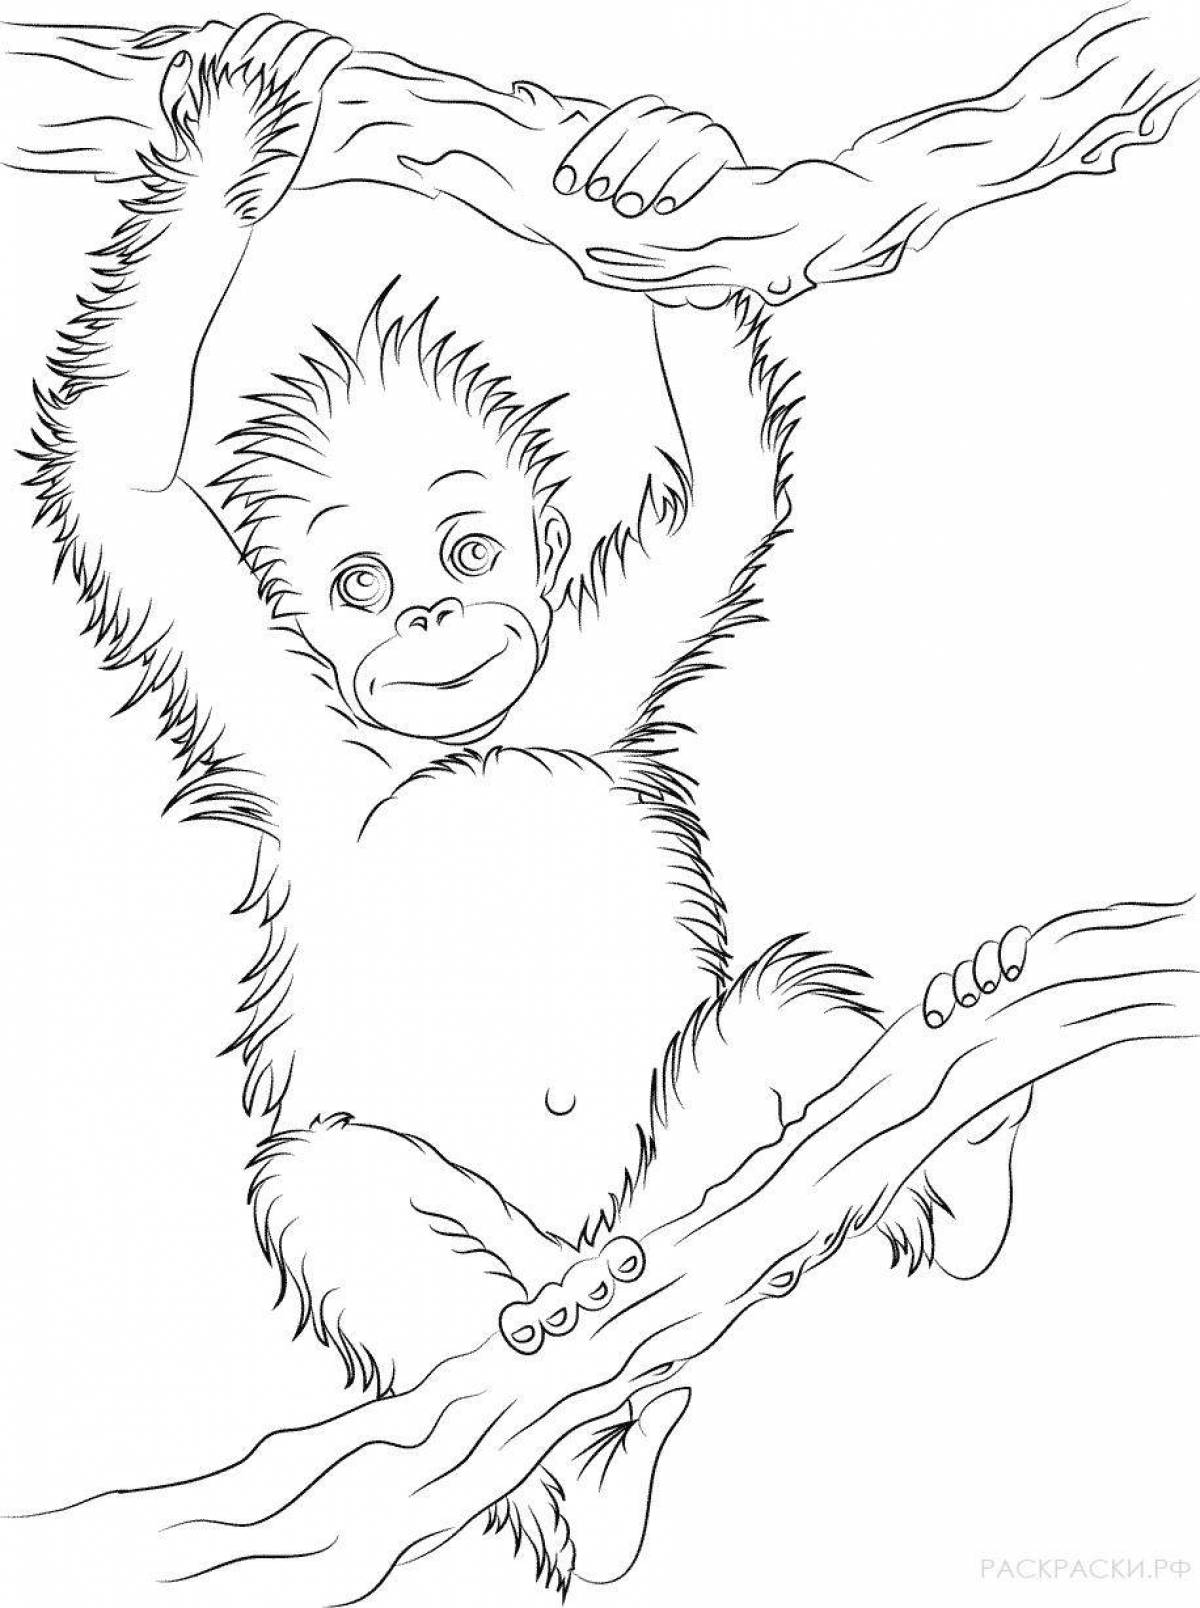 Adorable orangutan coloring book